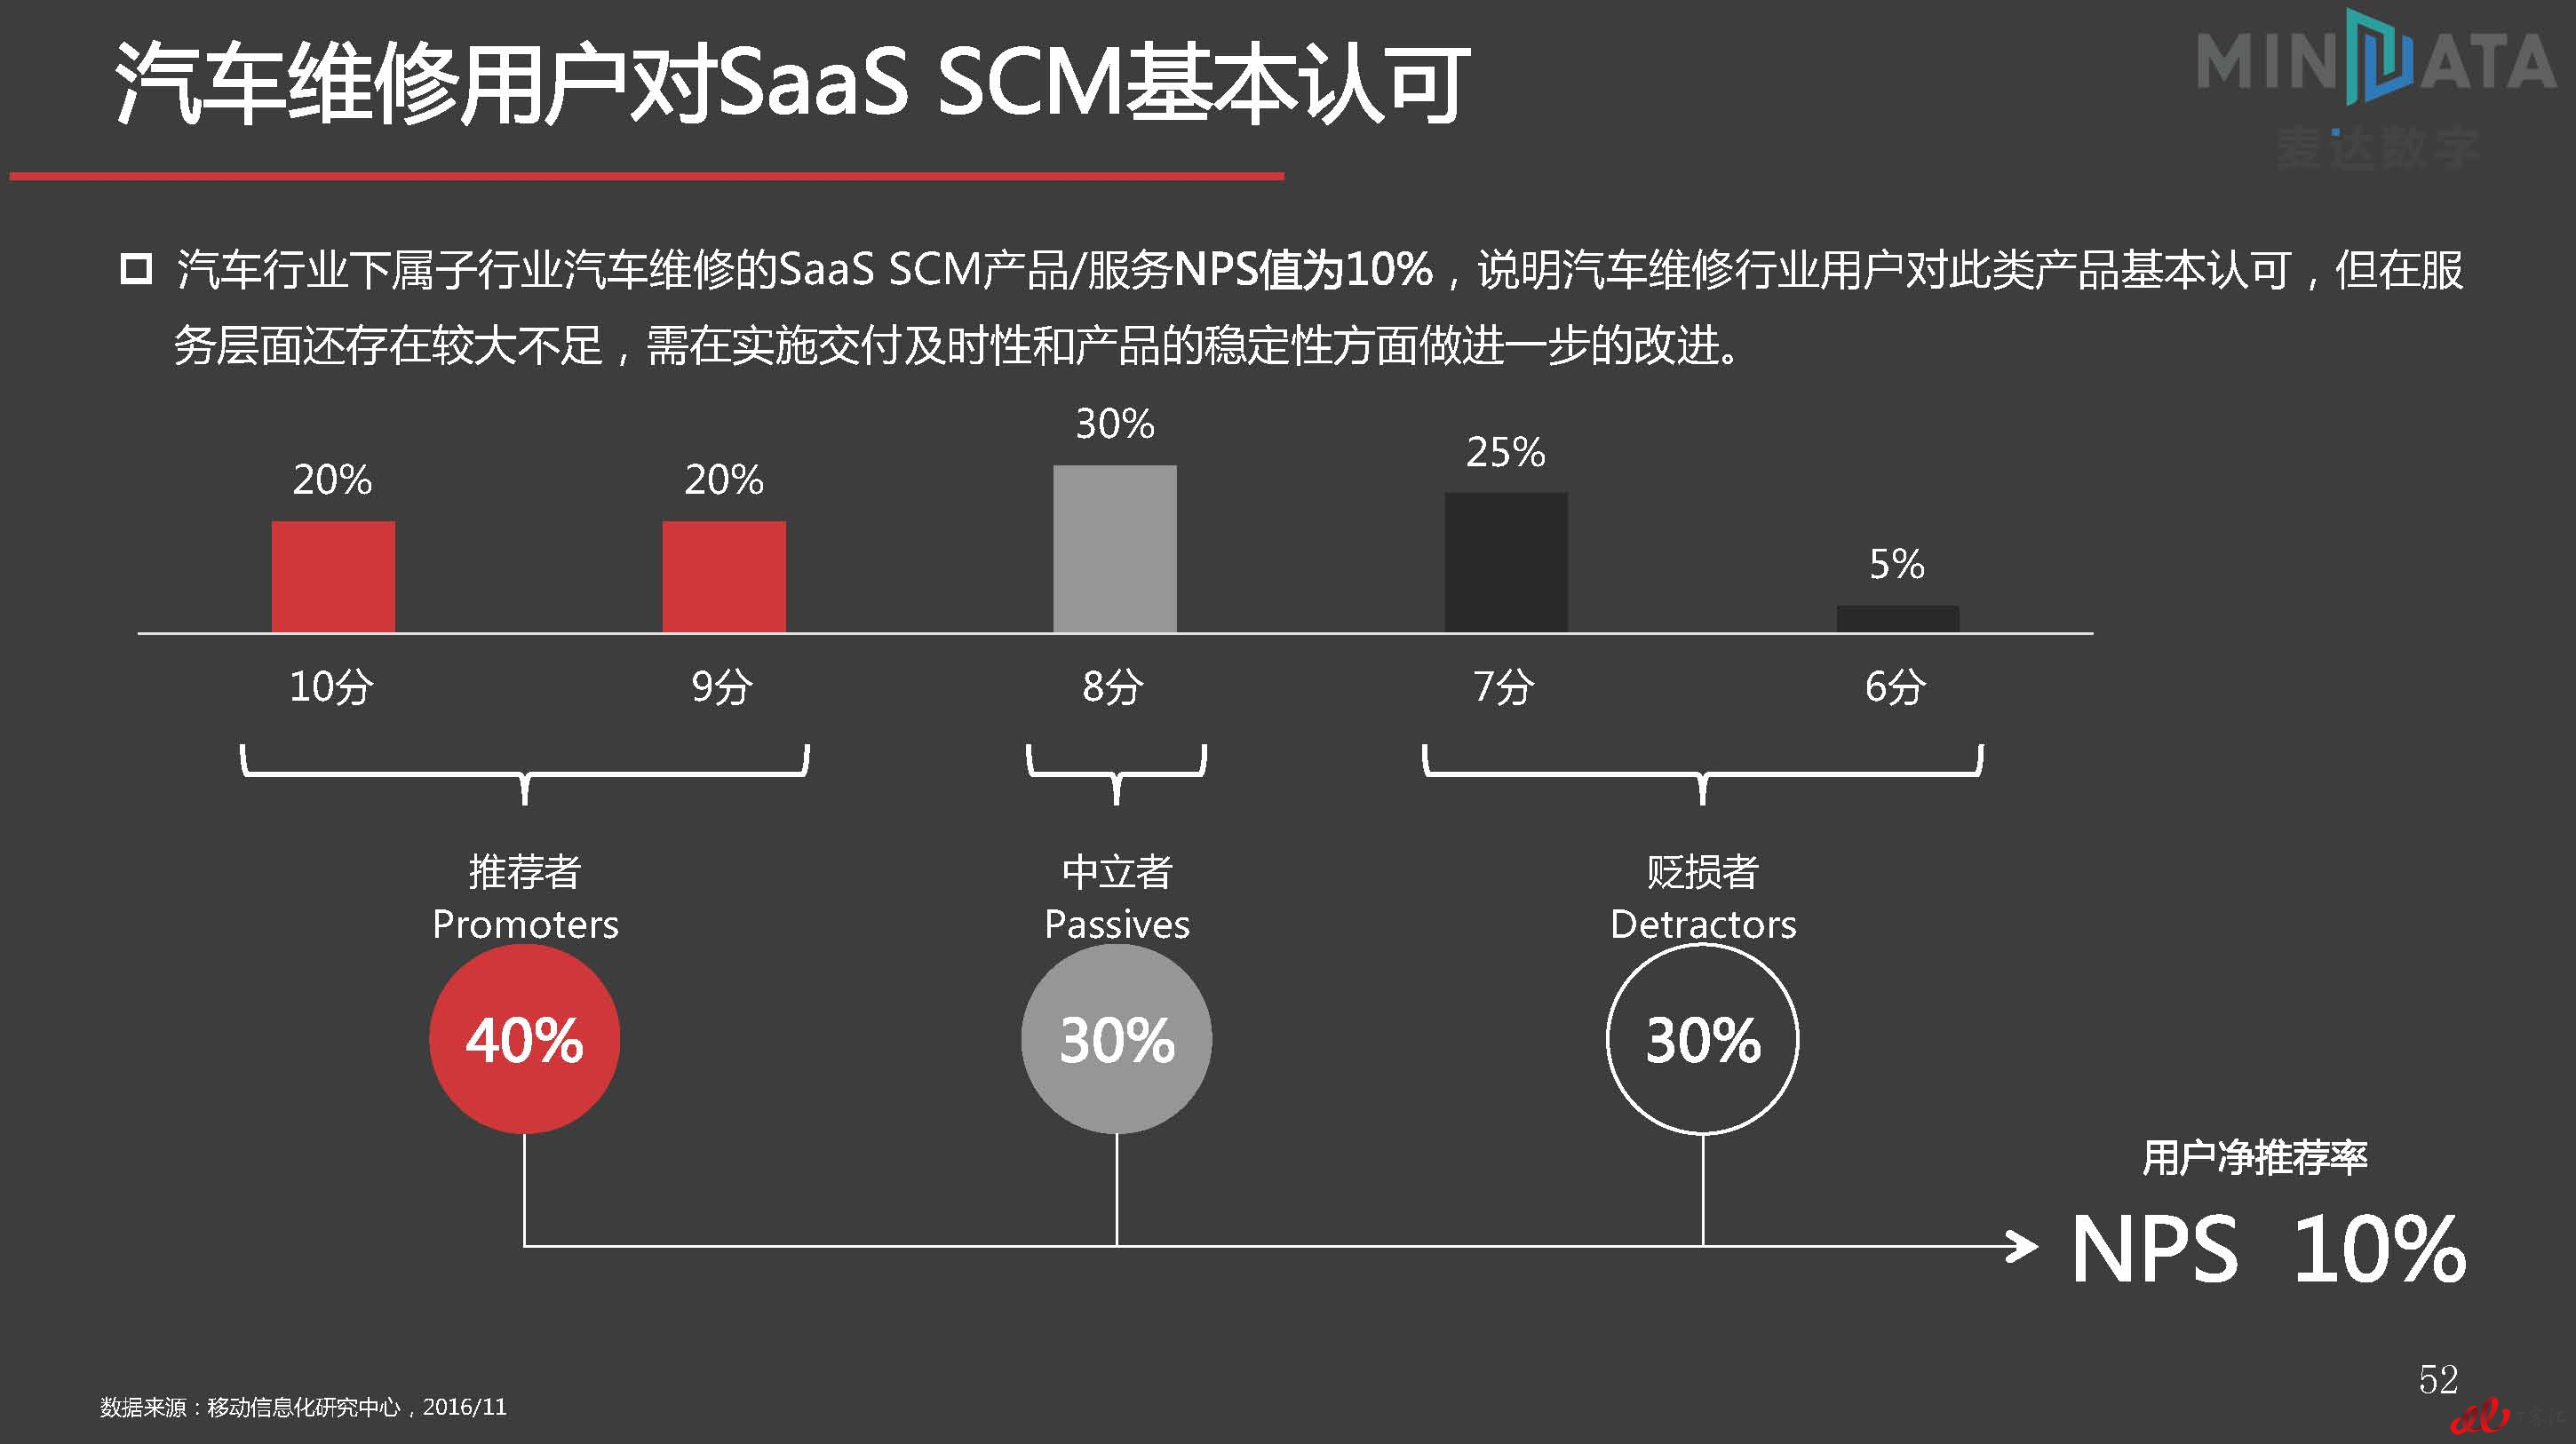 麦达SaaS指数——SaaS SCM NPS研究_页面_52.jpg